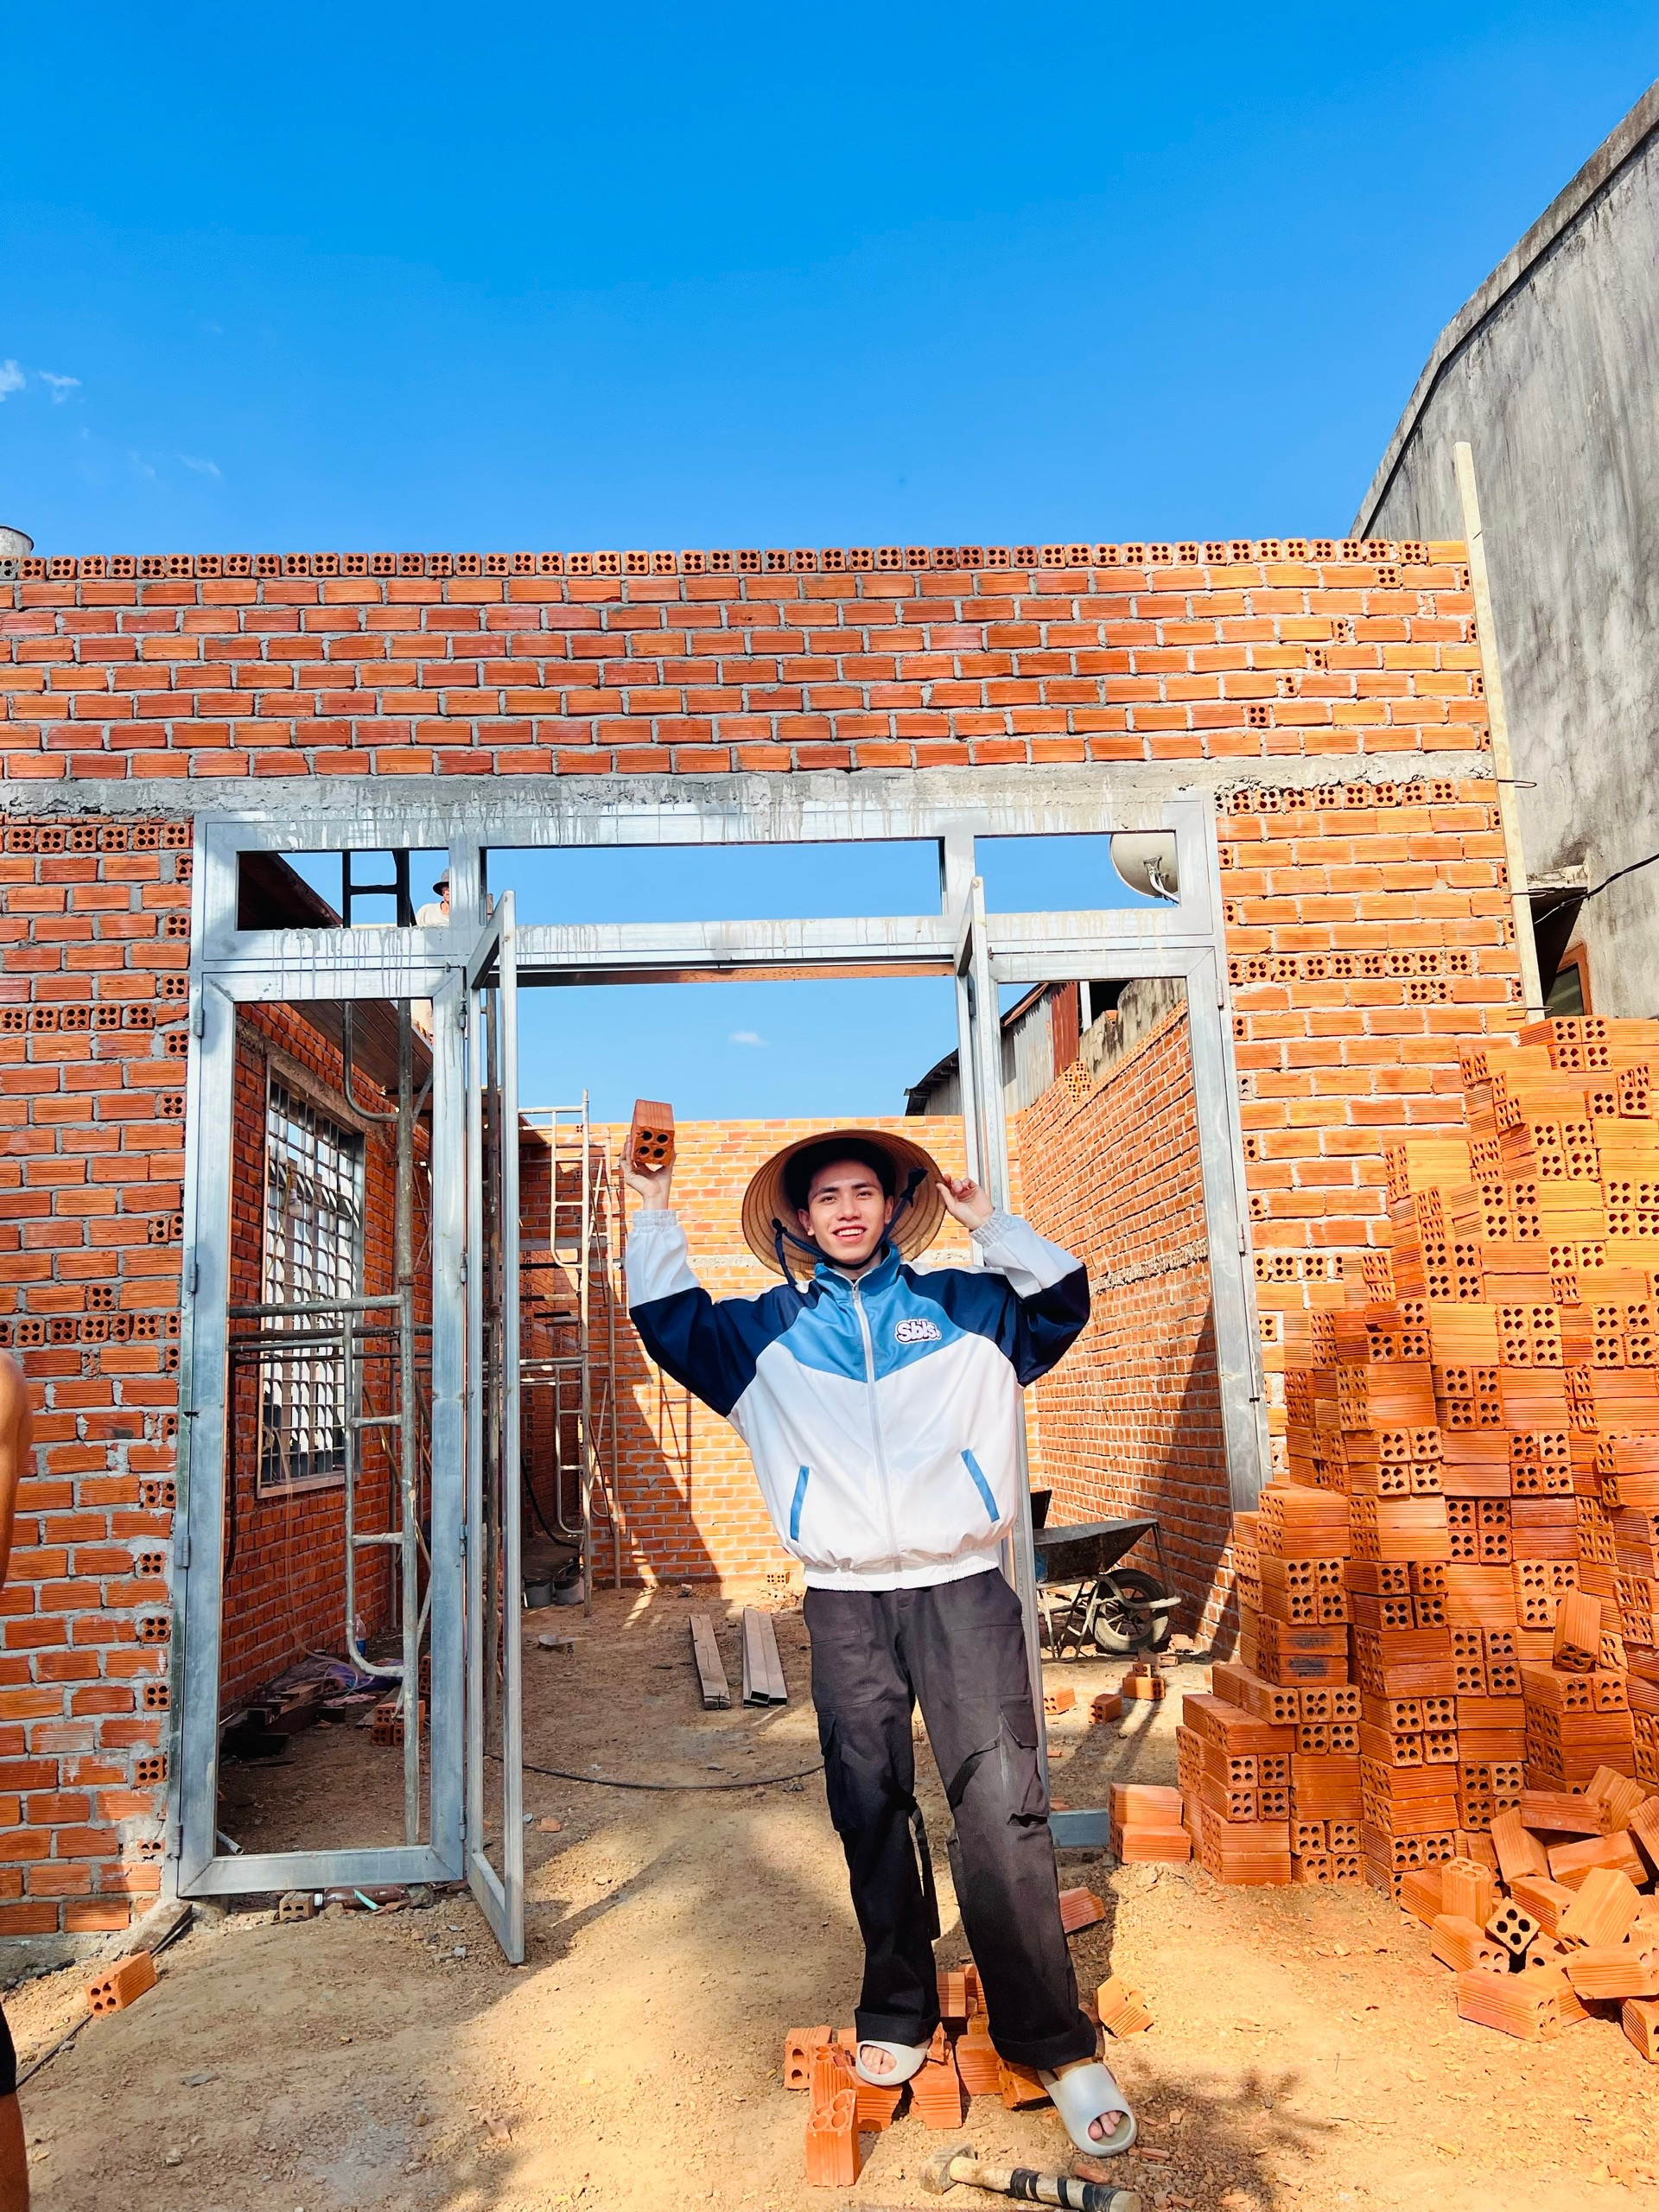 Ấp ủ giấc mơ từ khi còn học cấp 2, chàng trai 24 tuổi dồn sức tiết kiệm trong 3 năm được 1,2 tỷ xây nhà cho ba mẹ - Ảnh 1.